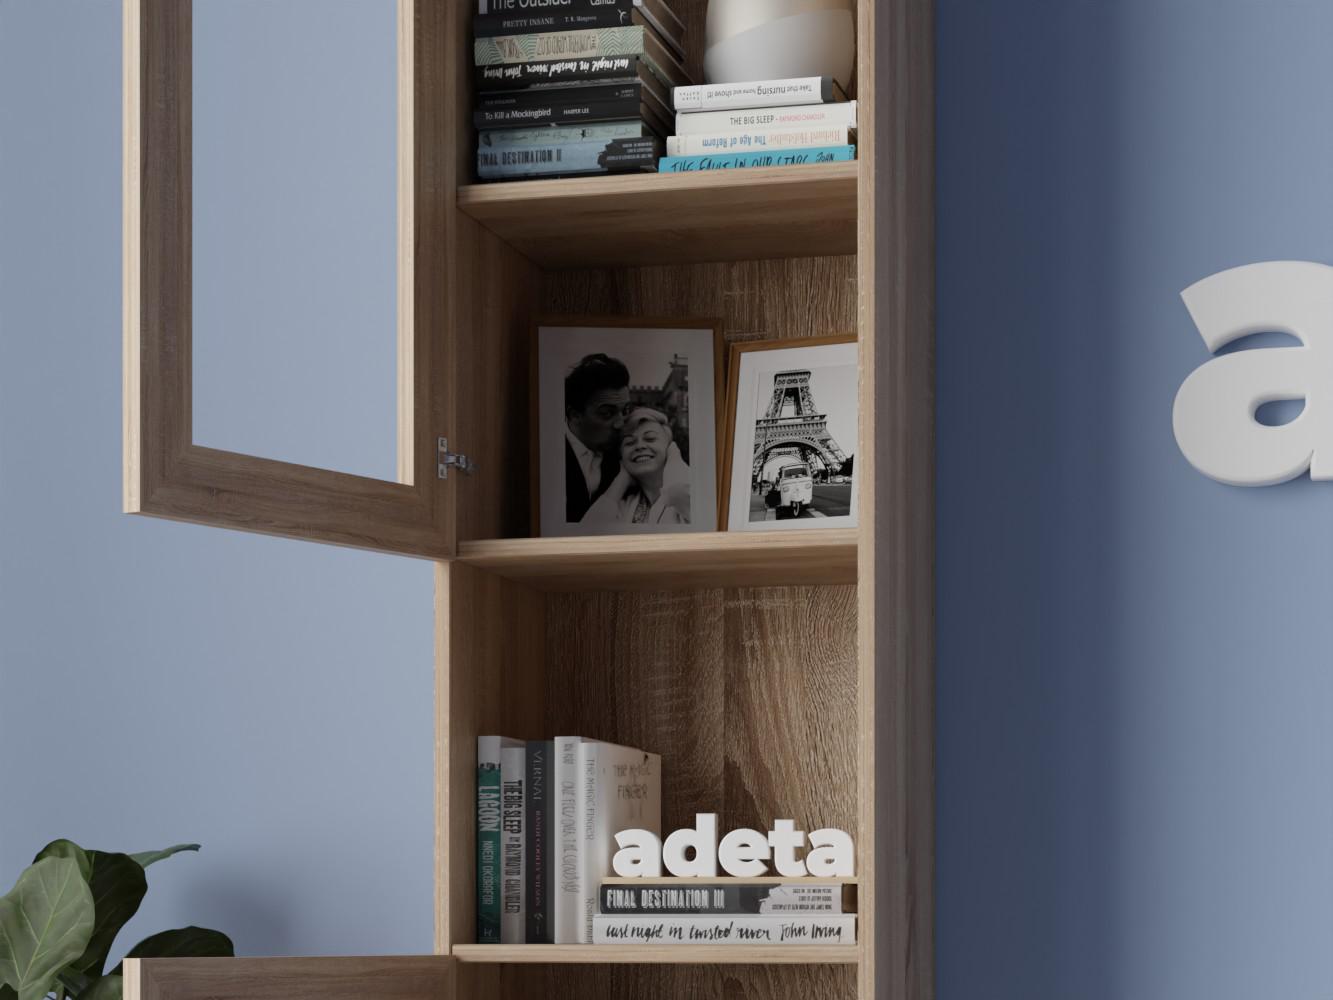 Изображение товара Книжный шкаф Билли 382 beige ИКЕА (IKEA), 40x30x237 см на сайте adeta.ru